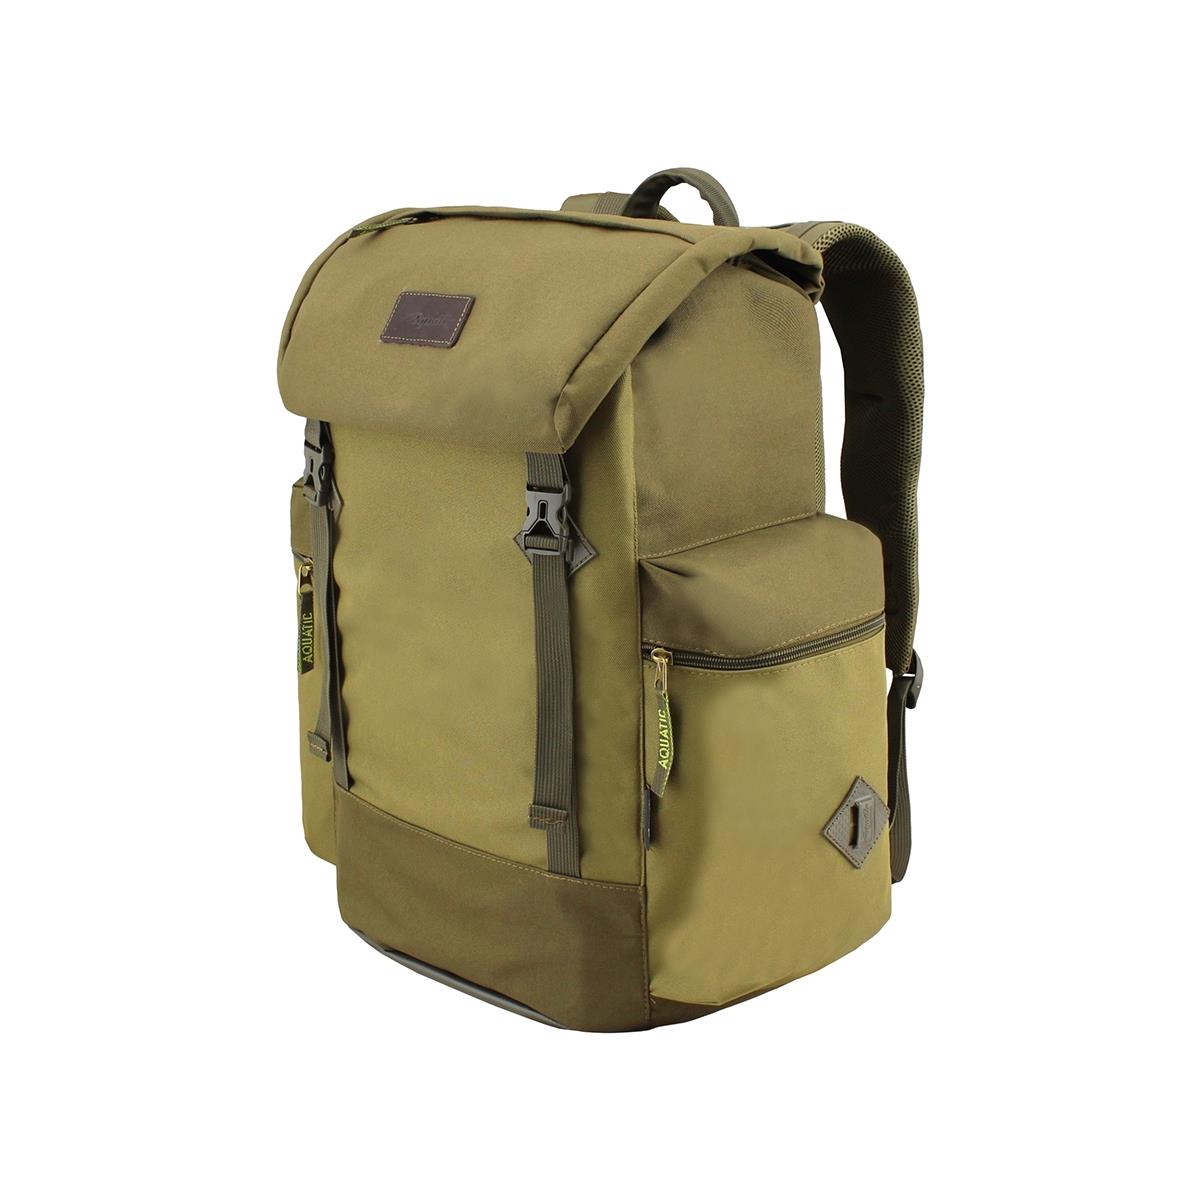 Рюкзак рыболовный РД-04 AQUATIC рюкзак на молнии 3 наружных кармана серый